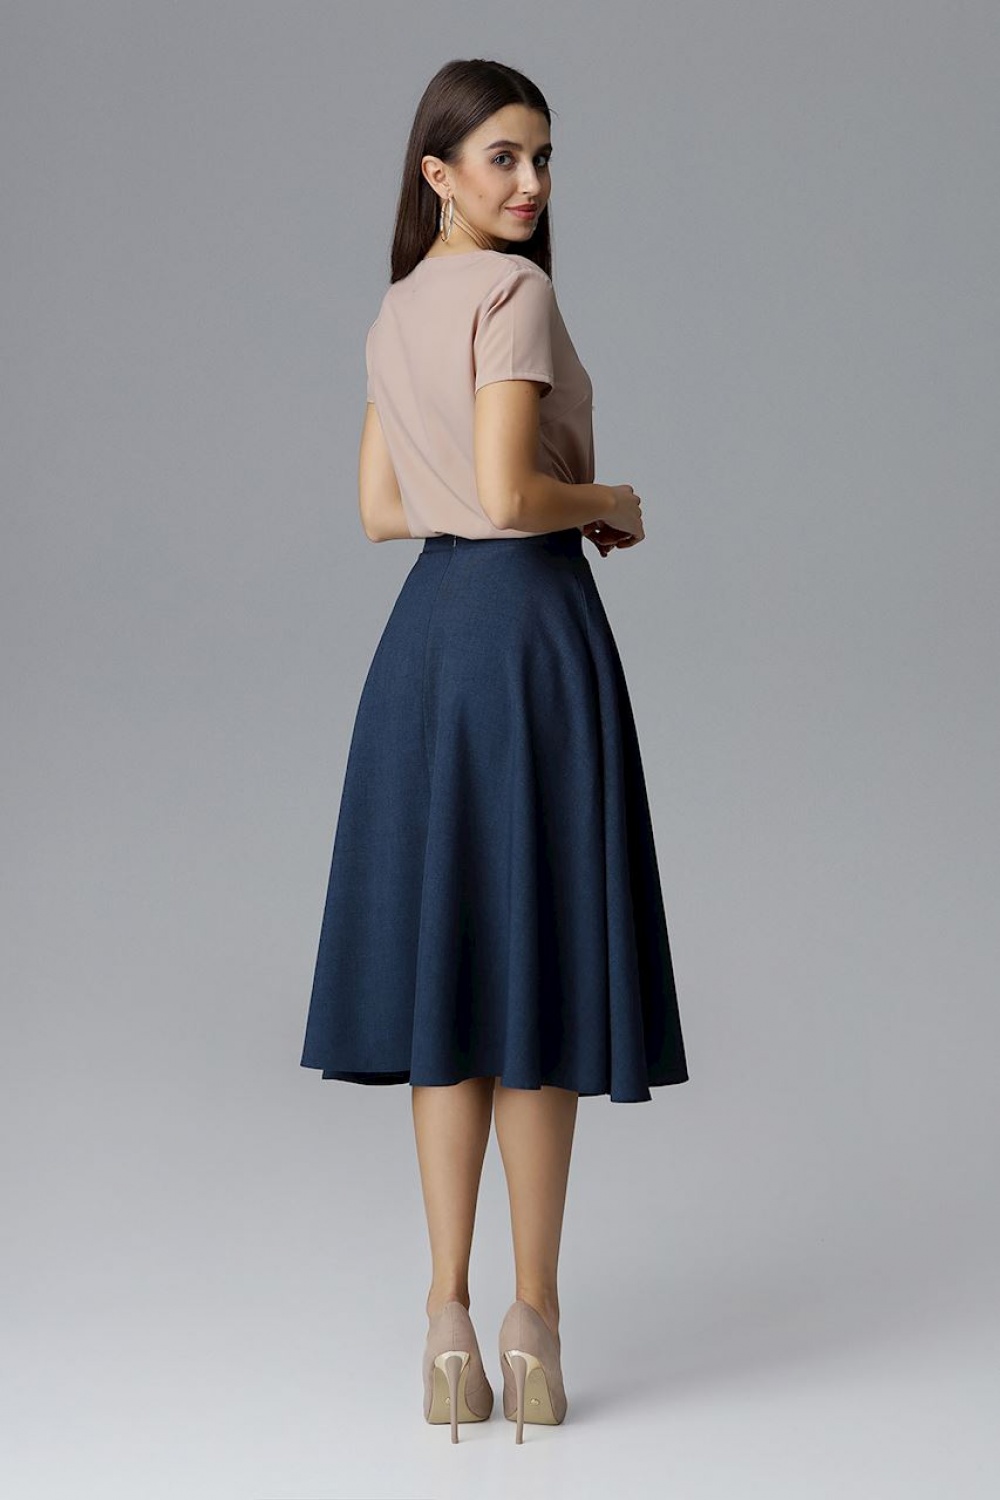  Skirt model 126036 Figl  navy blue